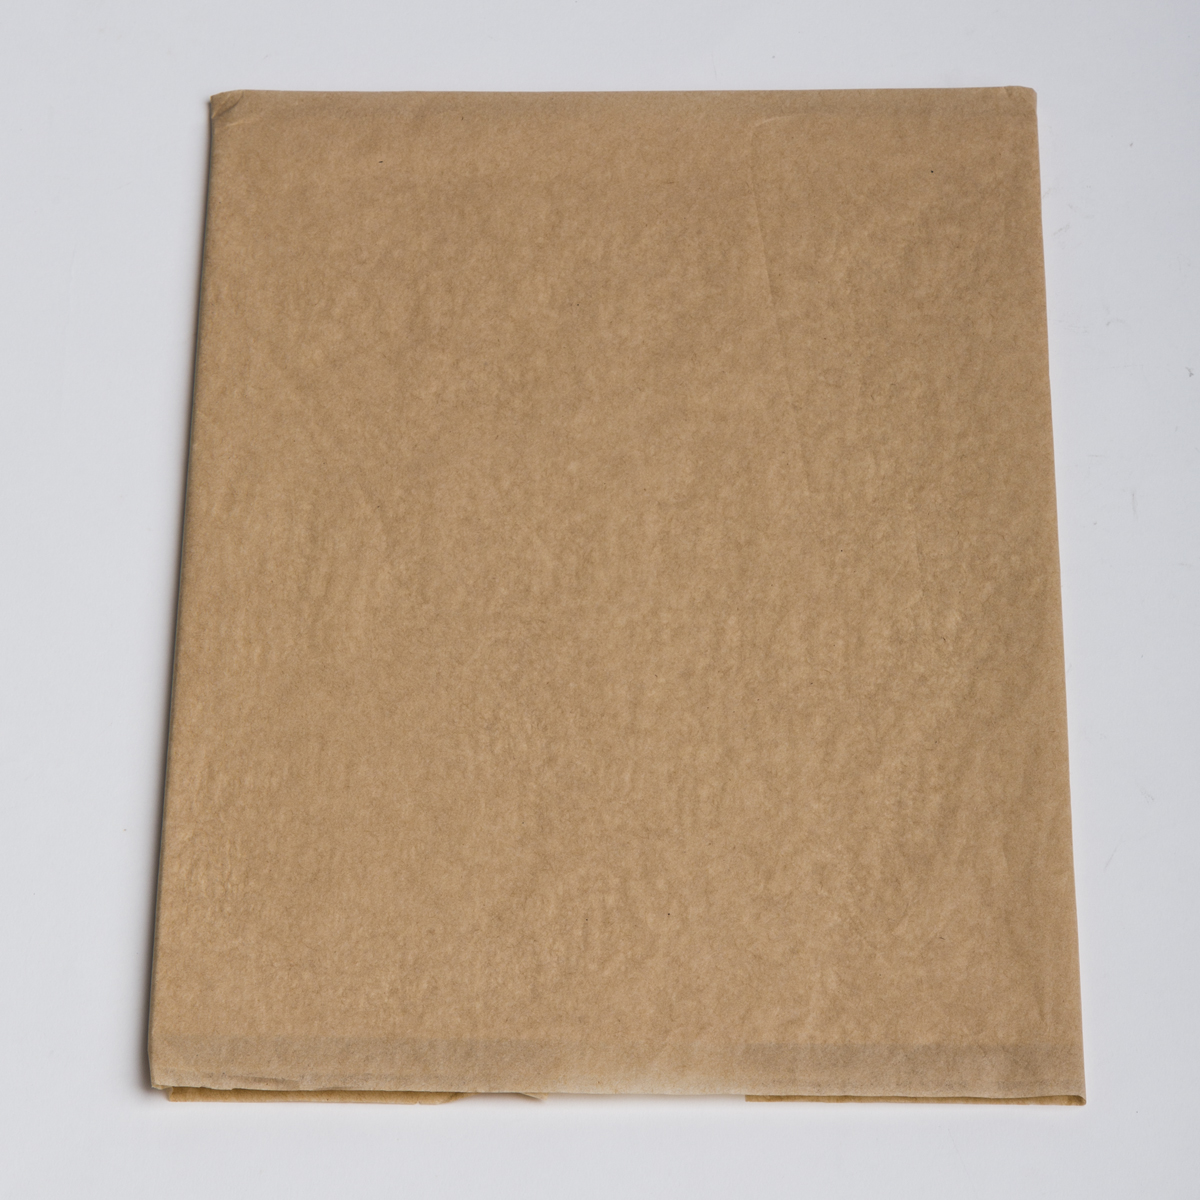 Kraft Tissue Paper (480 Sheets)